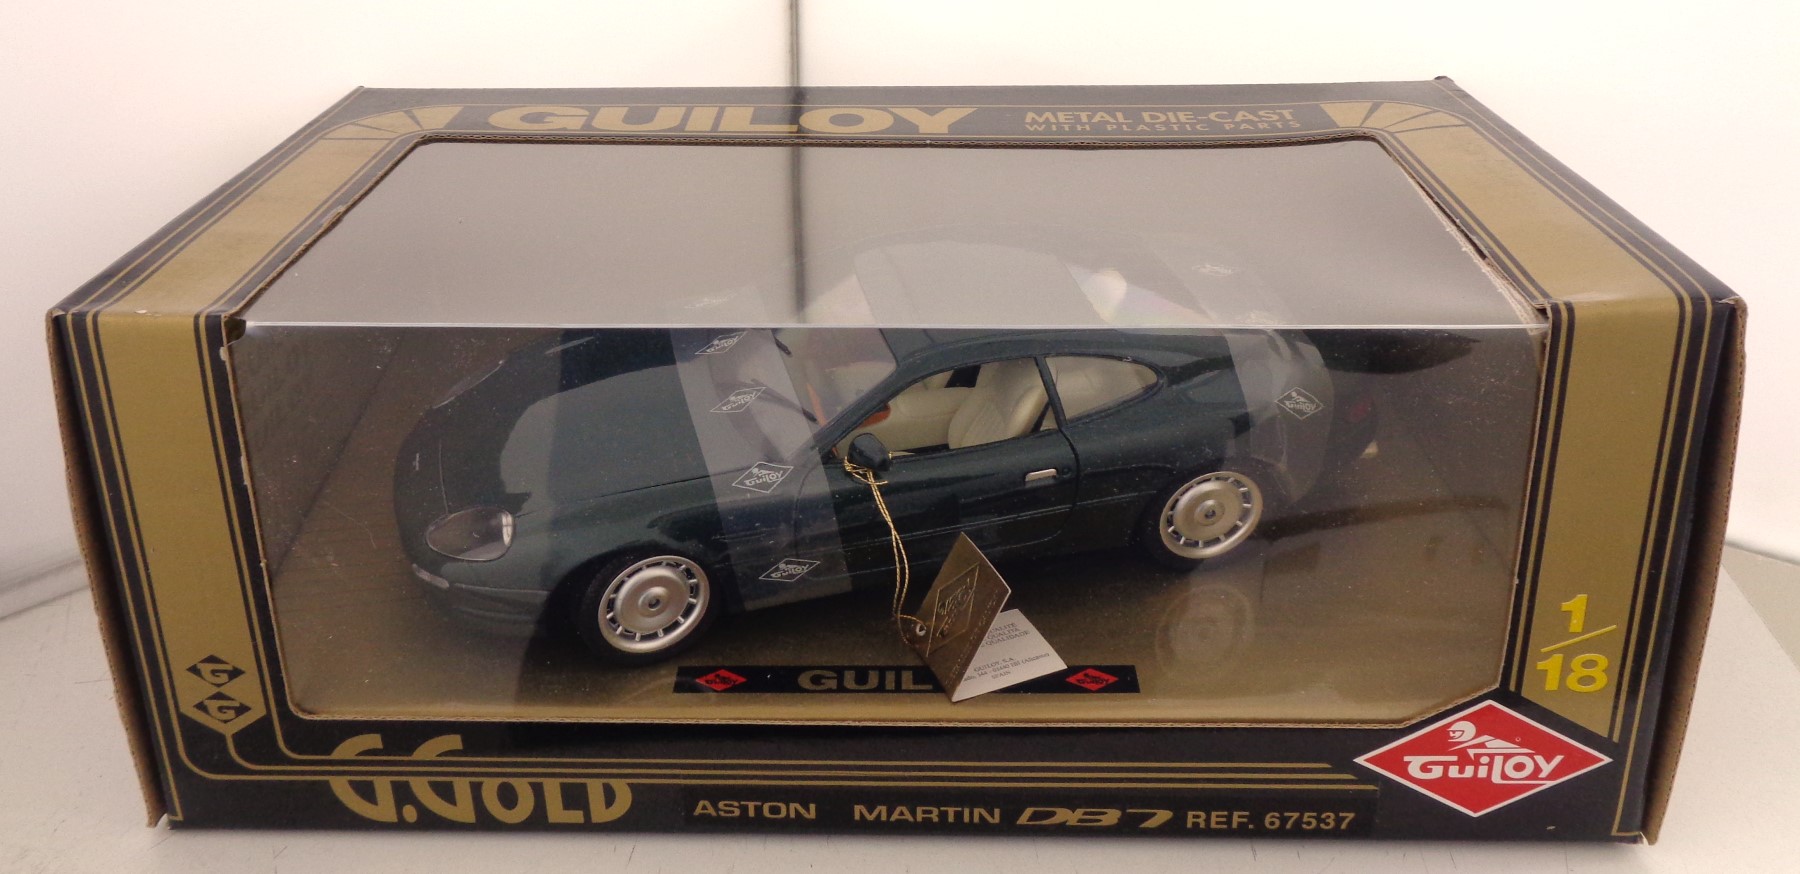 Aston Martin DB7 Bleu Metal Guiloy 1/18 Modèle Réduit Voiture Collection  Miniature - Guiloy | Beebs